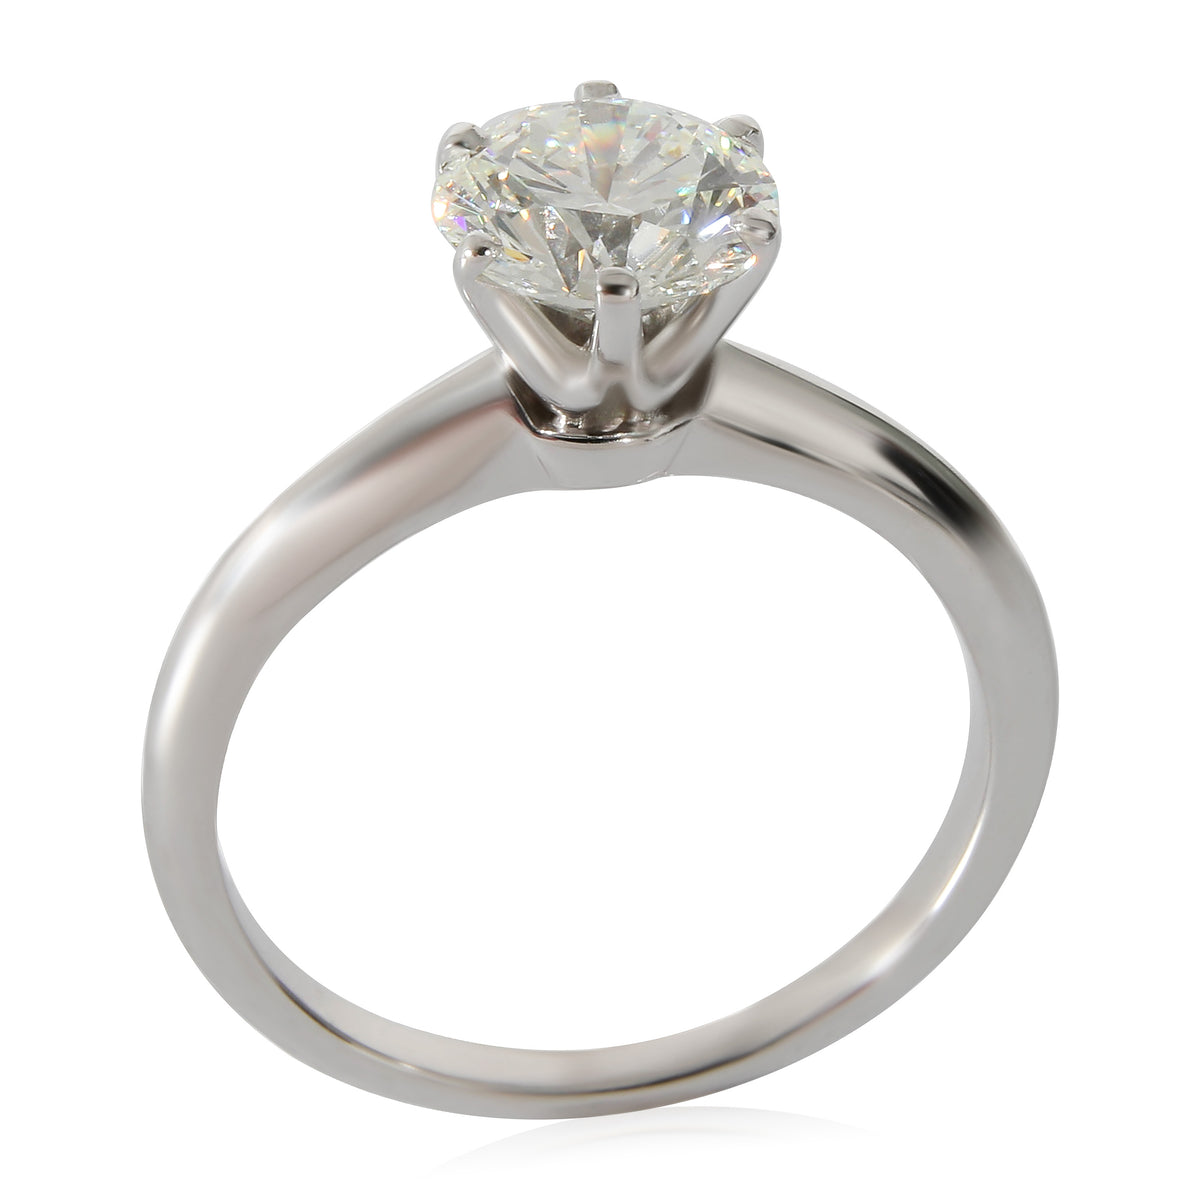 Diamond Engagement Ring in Platinum I VVS2 1.29 CTW